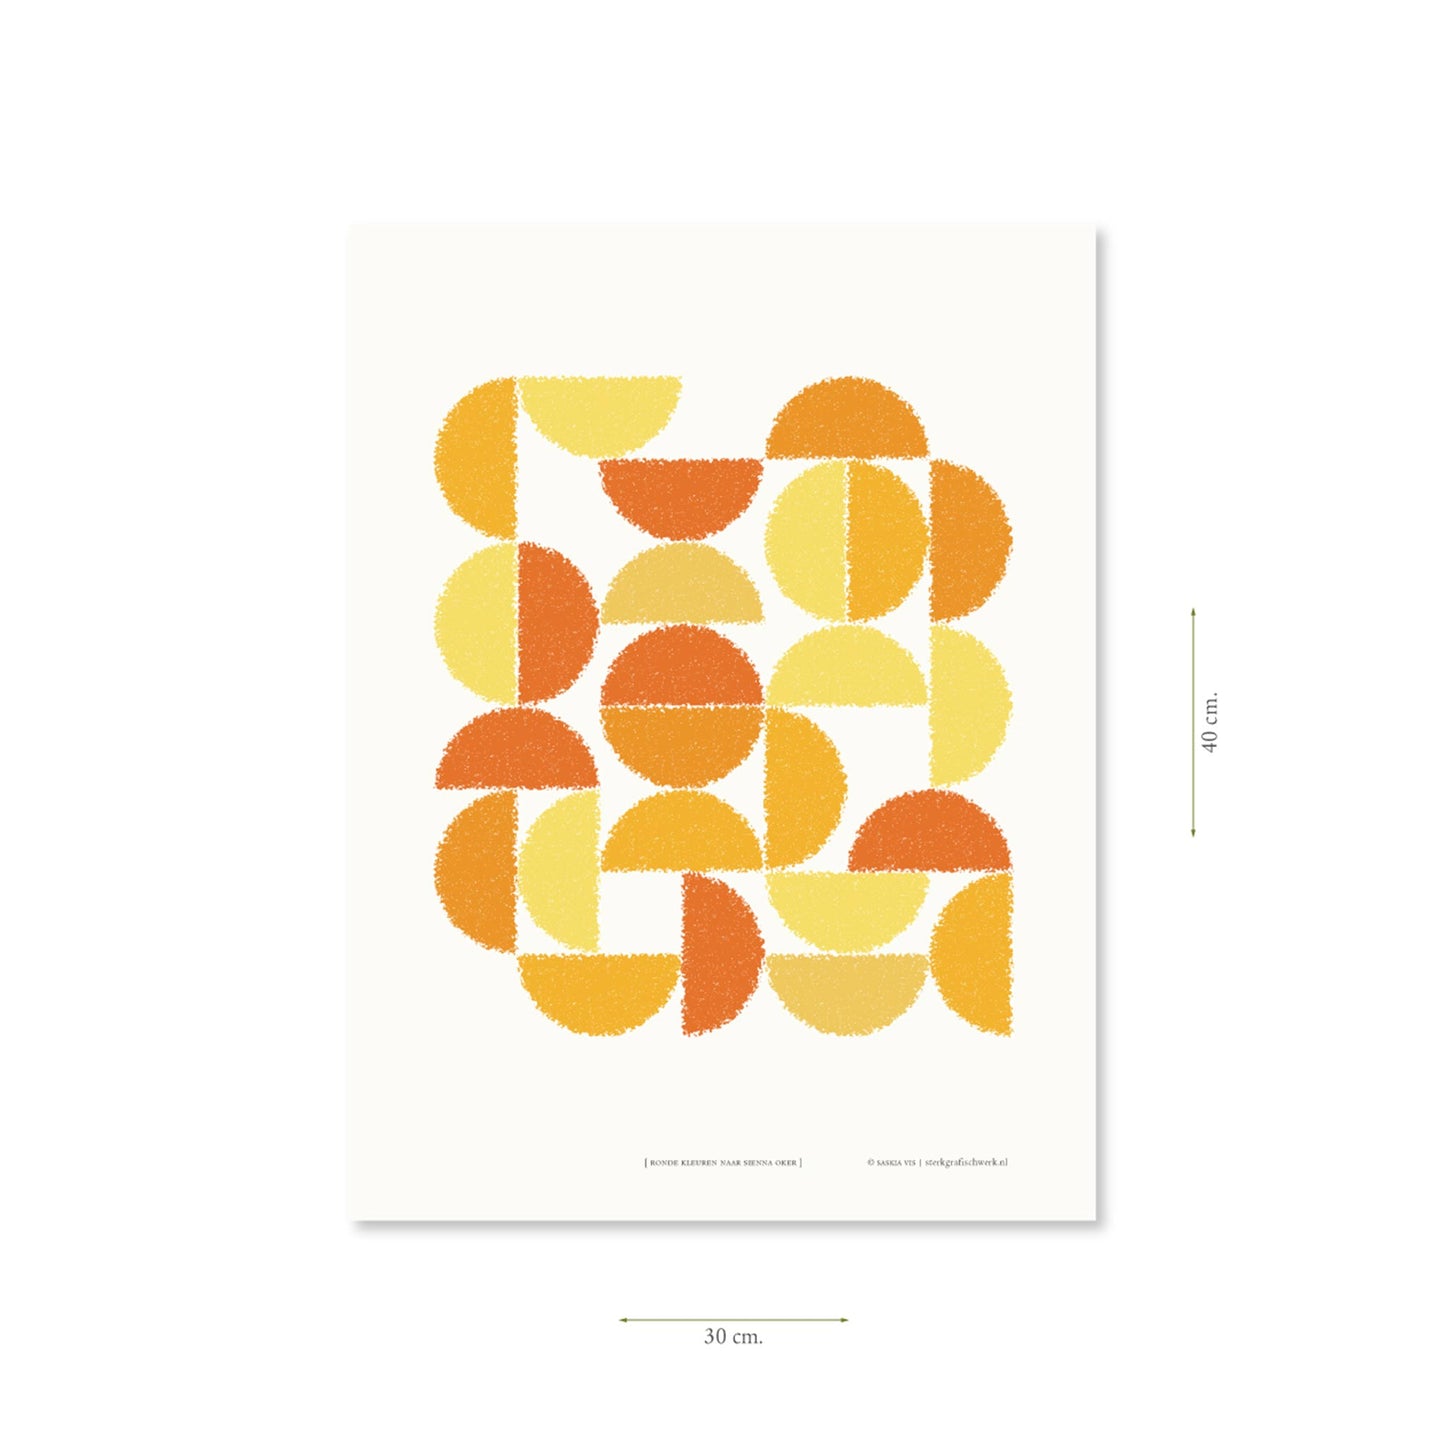 Productafbeelding, poster "ronde kleuren naar sienna oker", met aanduiding van het formaat erop weergegeven 30 x 40 cm